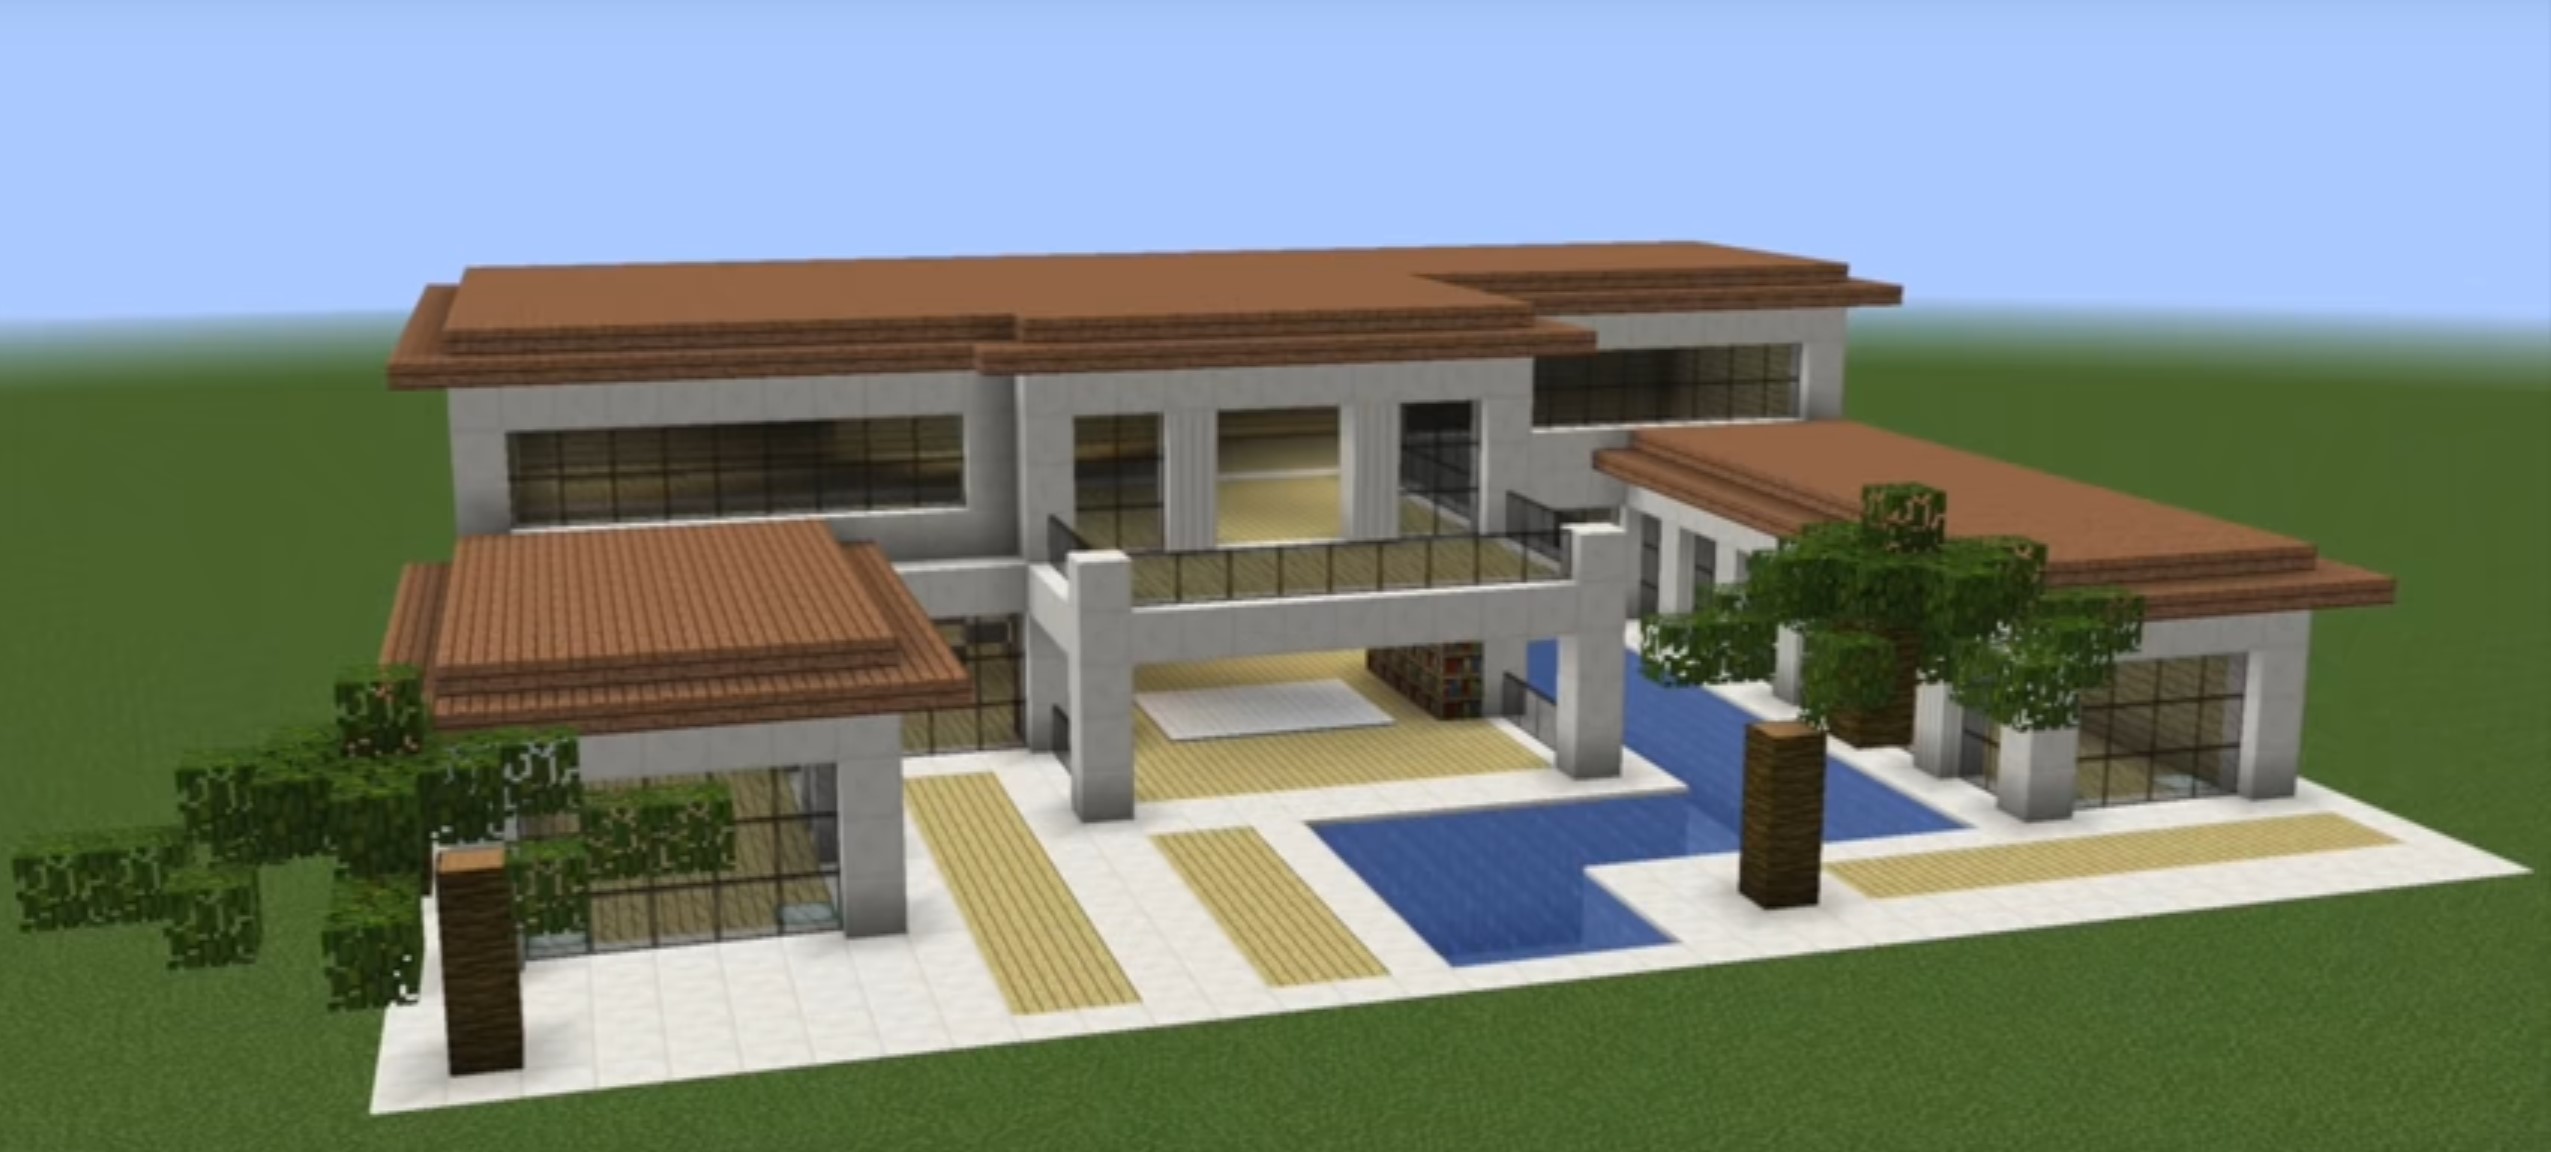 Minecraft huge luxury villa idea